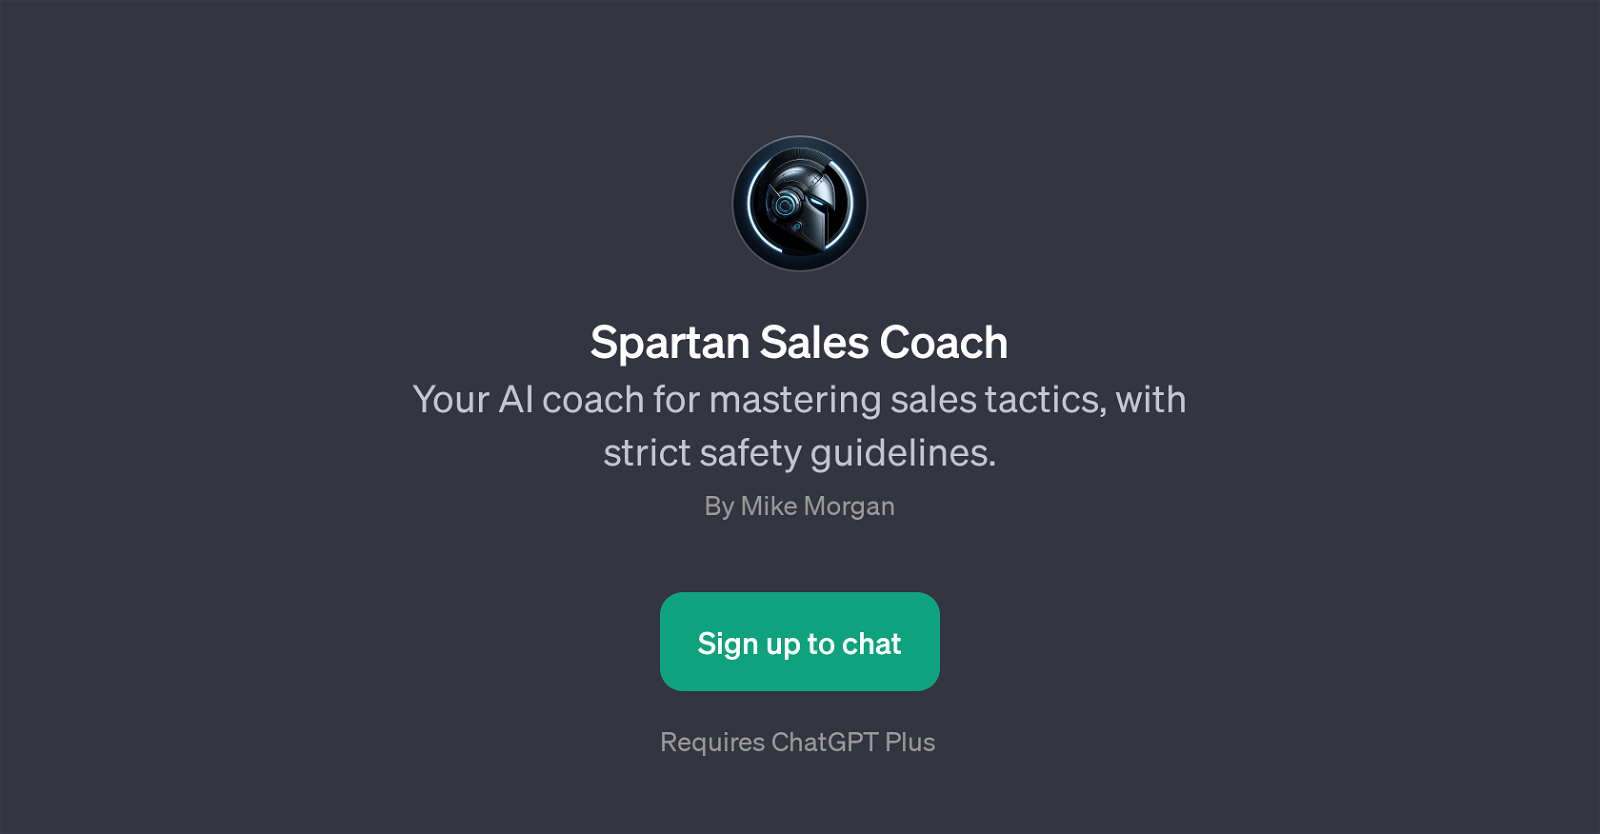 Spartan Sales Coach website